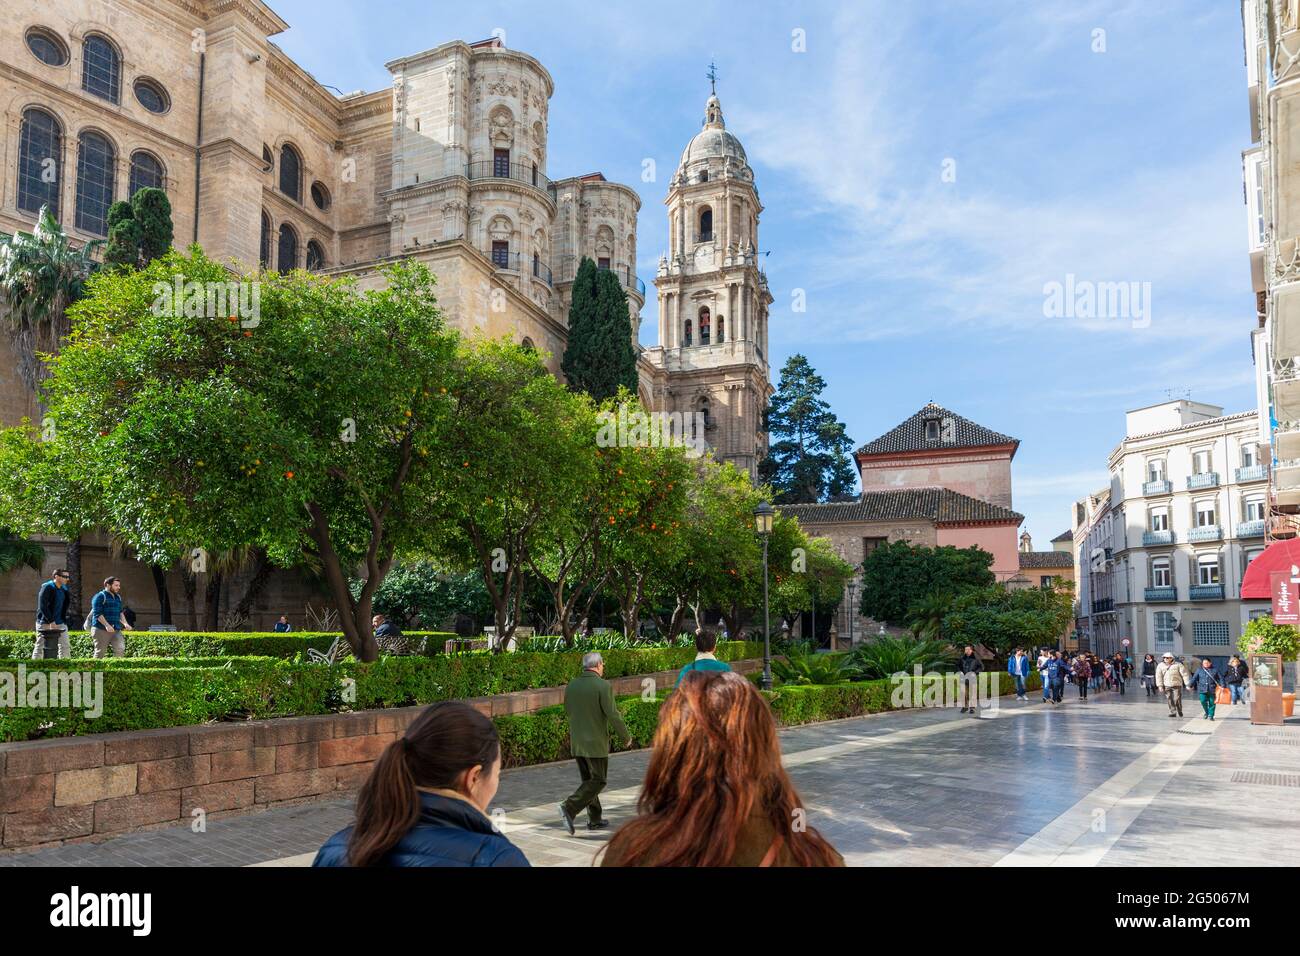 Malaga, Provinz Malaga, Costa del Sol, Spanien. Die Renaissance-Kathedrale. Der vollständige spanische Name ist La Santa Iglesia Catedral Basilica de la Encarnacion. Stockfoto